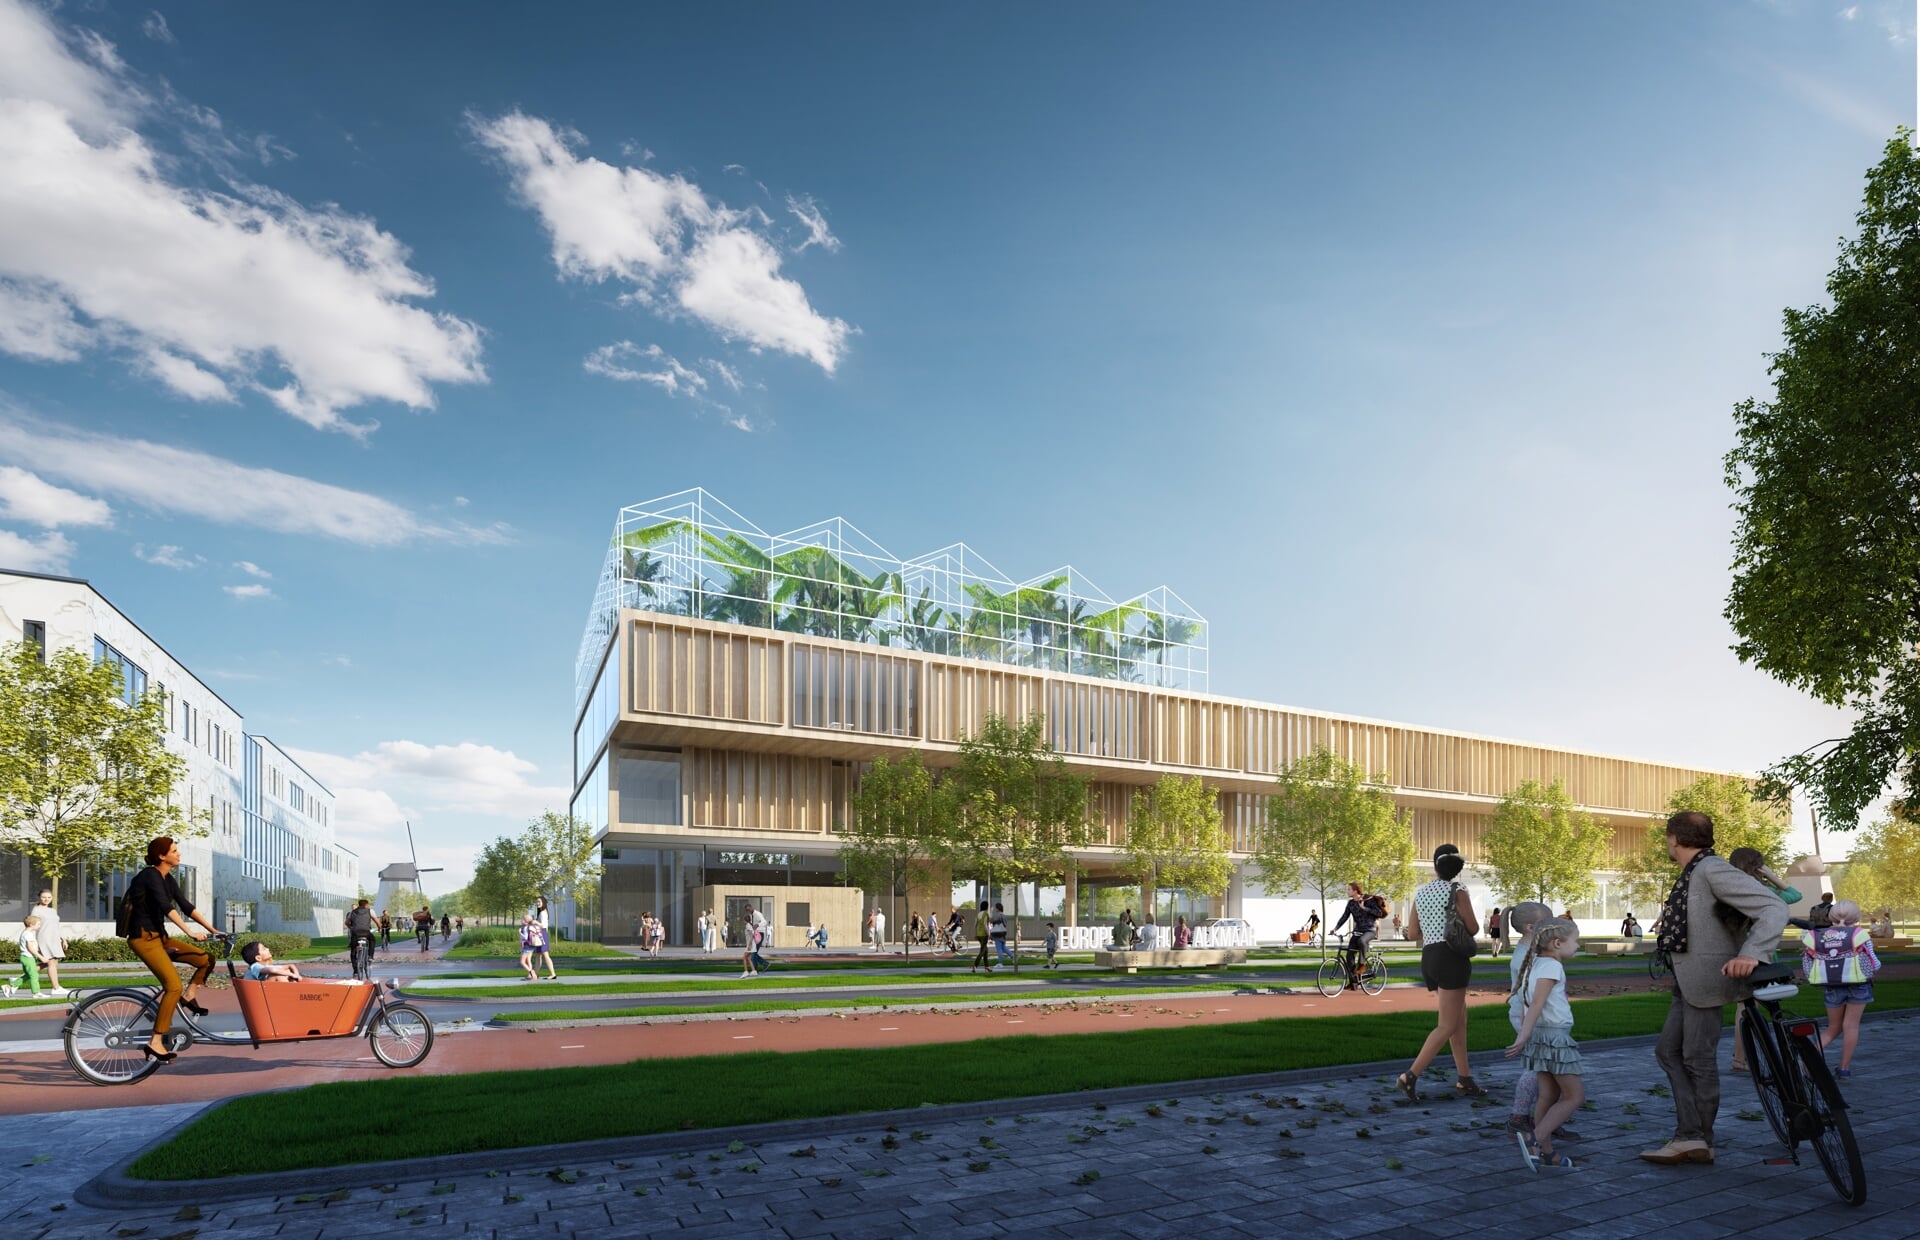 Het nieuwe schoolgebouw voor de Europese School komt aan de Hertog Aalbrechtweg.